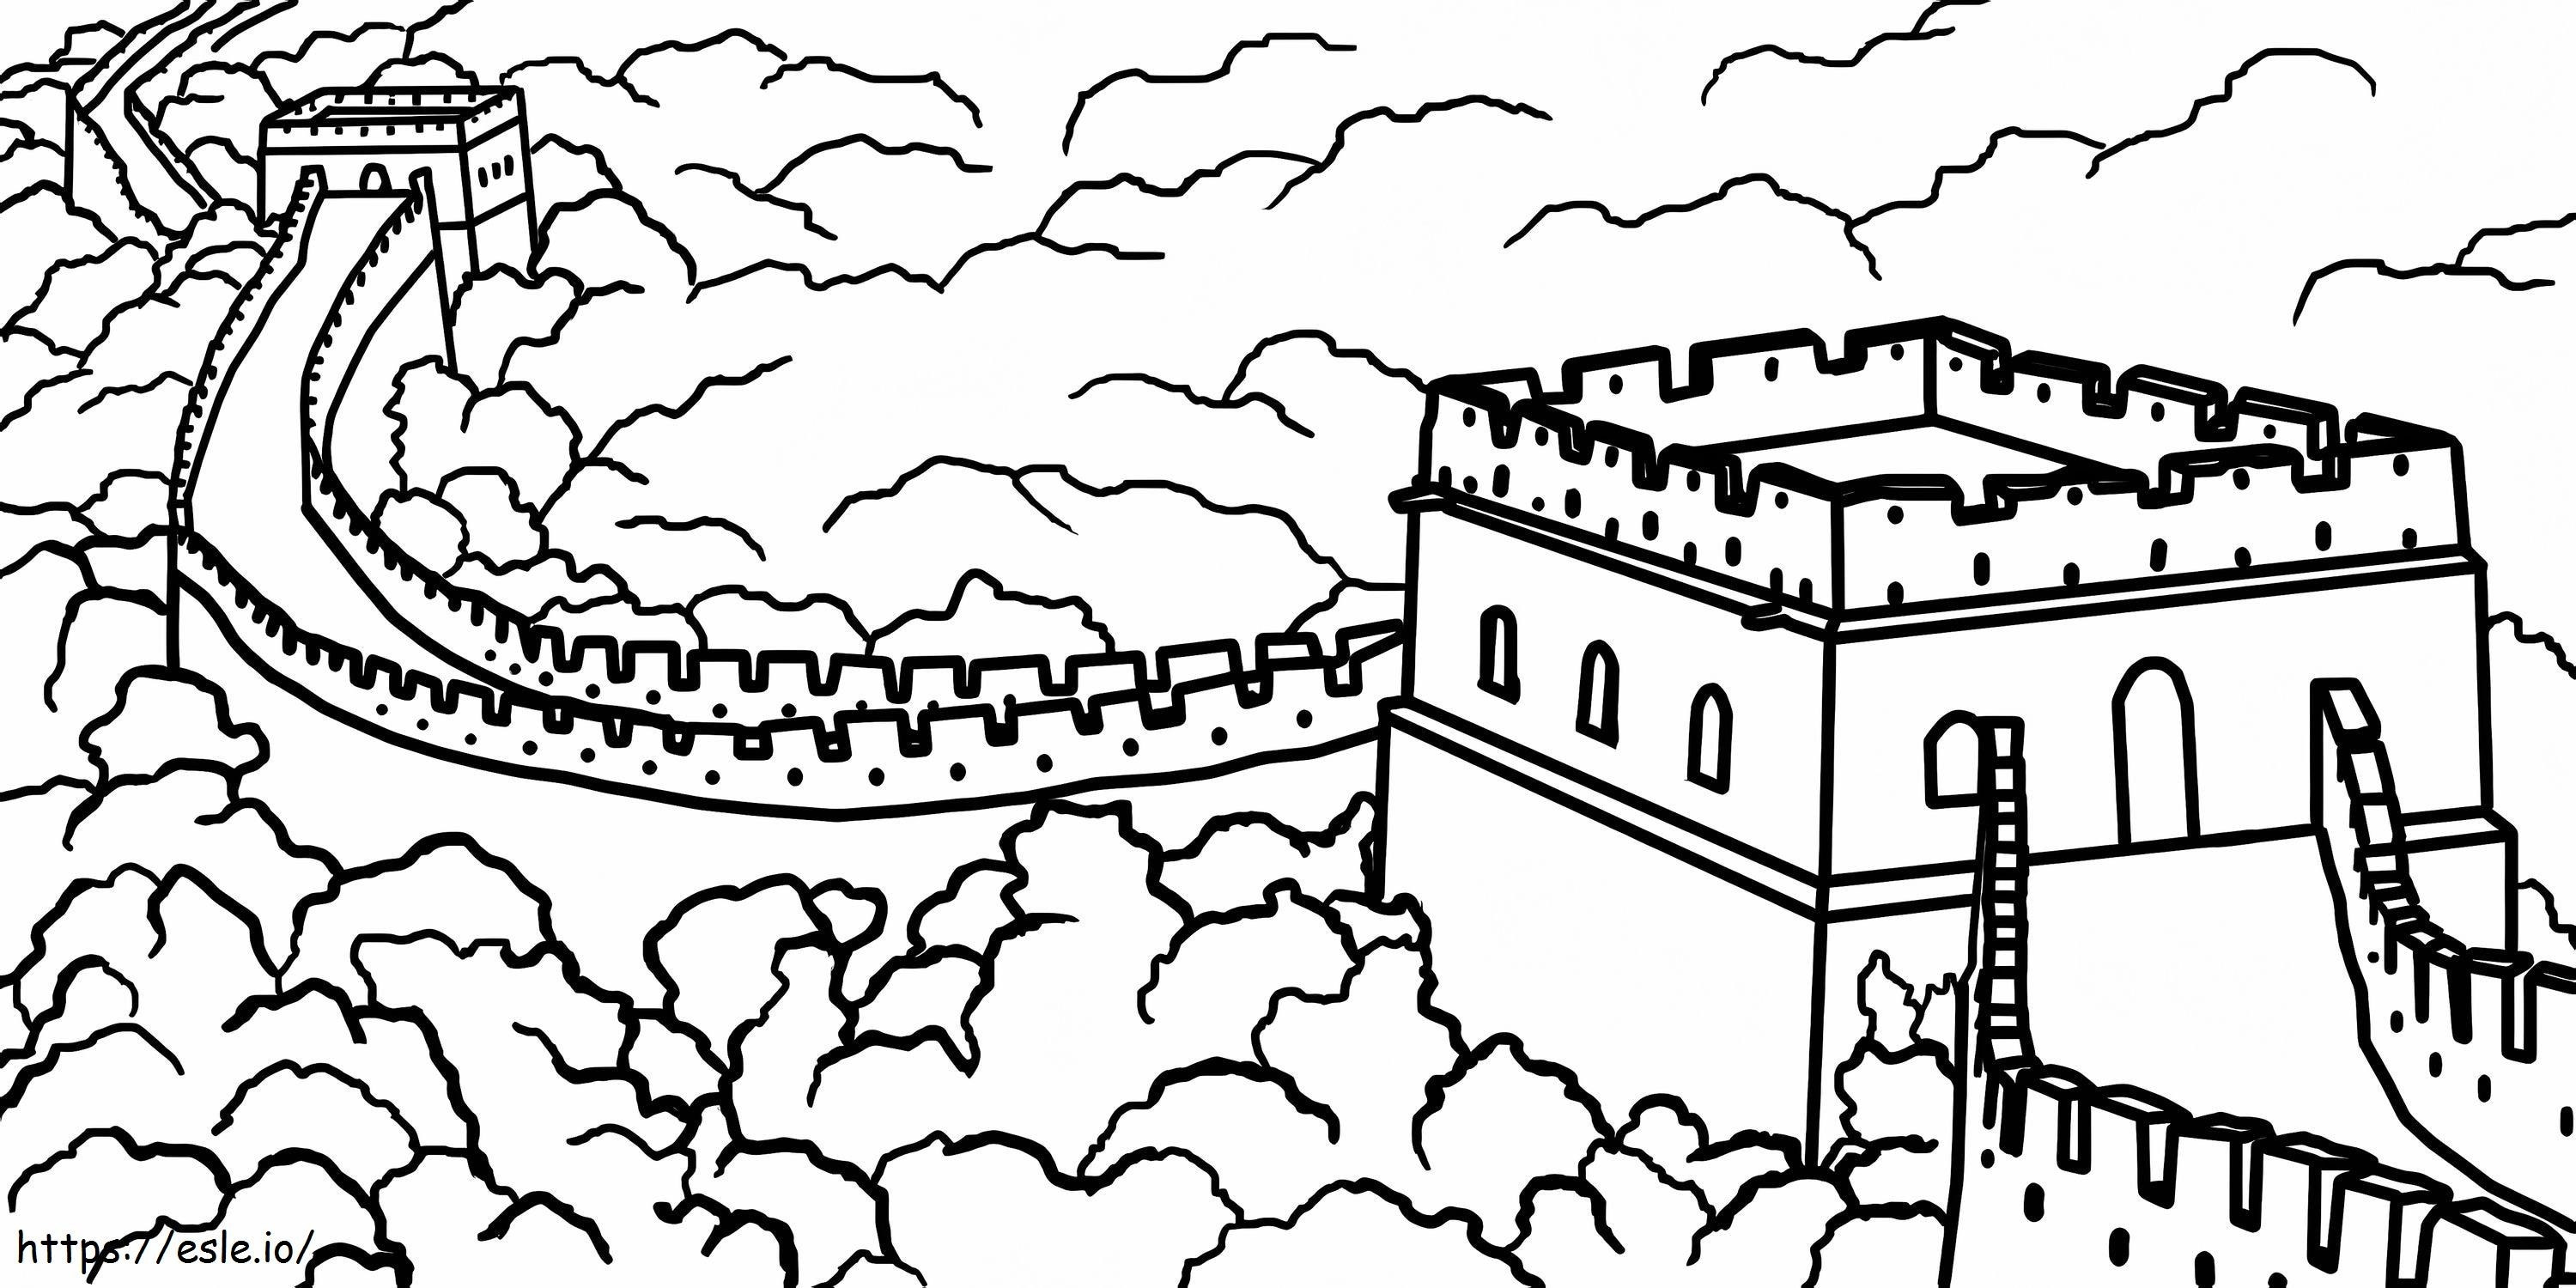 Desenul Marelui Zid de colorat